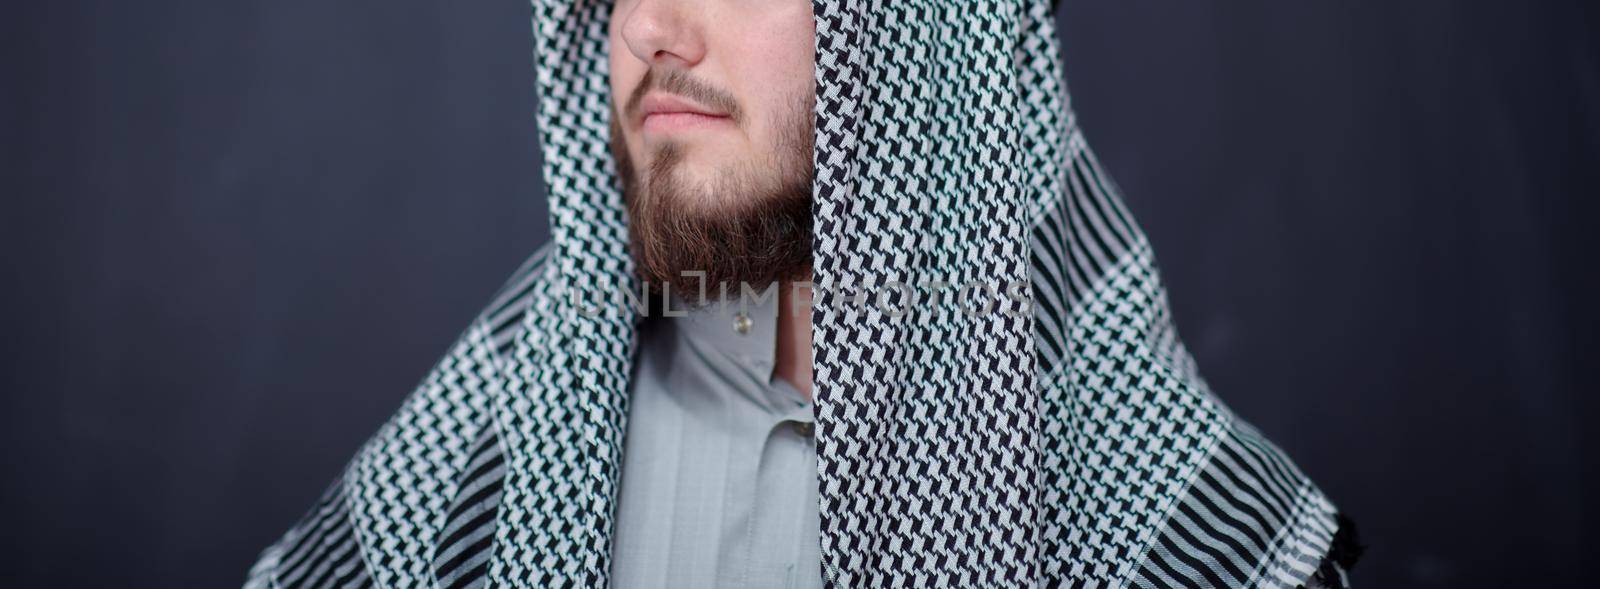 portrait of arabian man in front of black chalkboard by dotshock